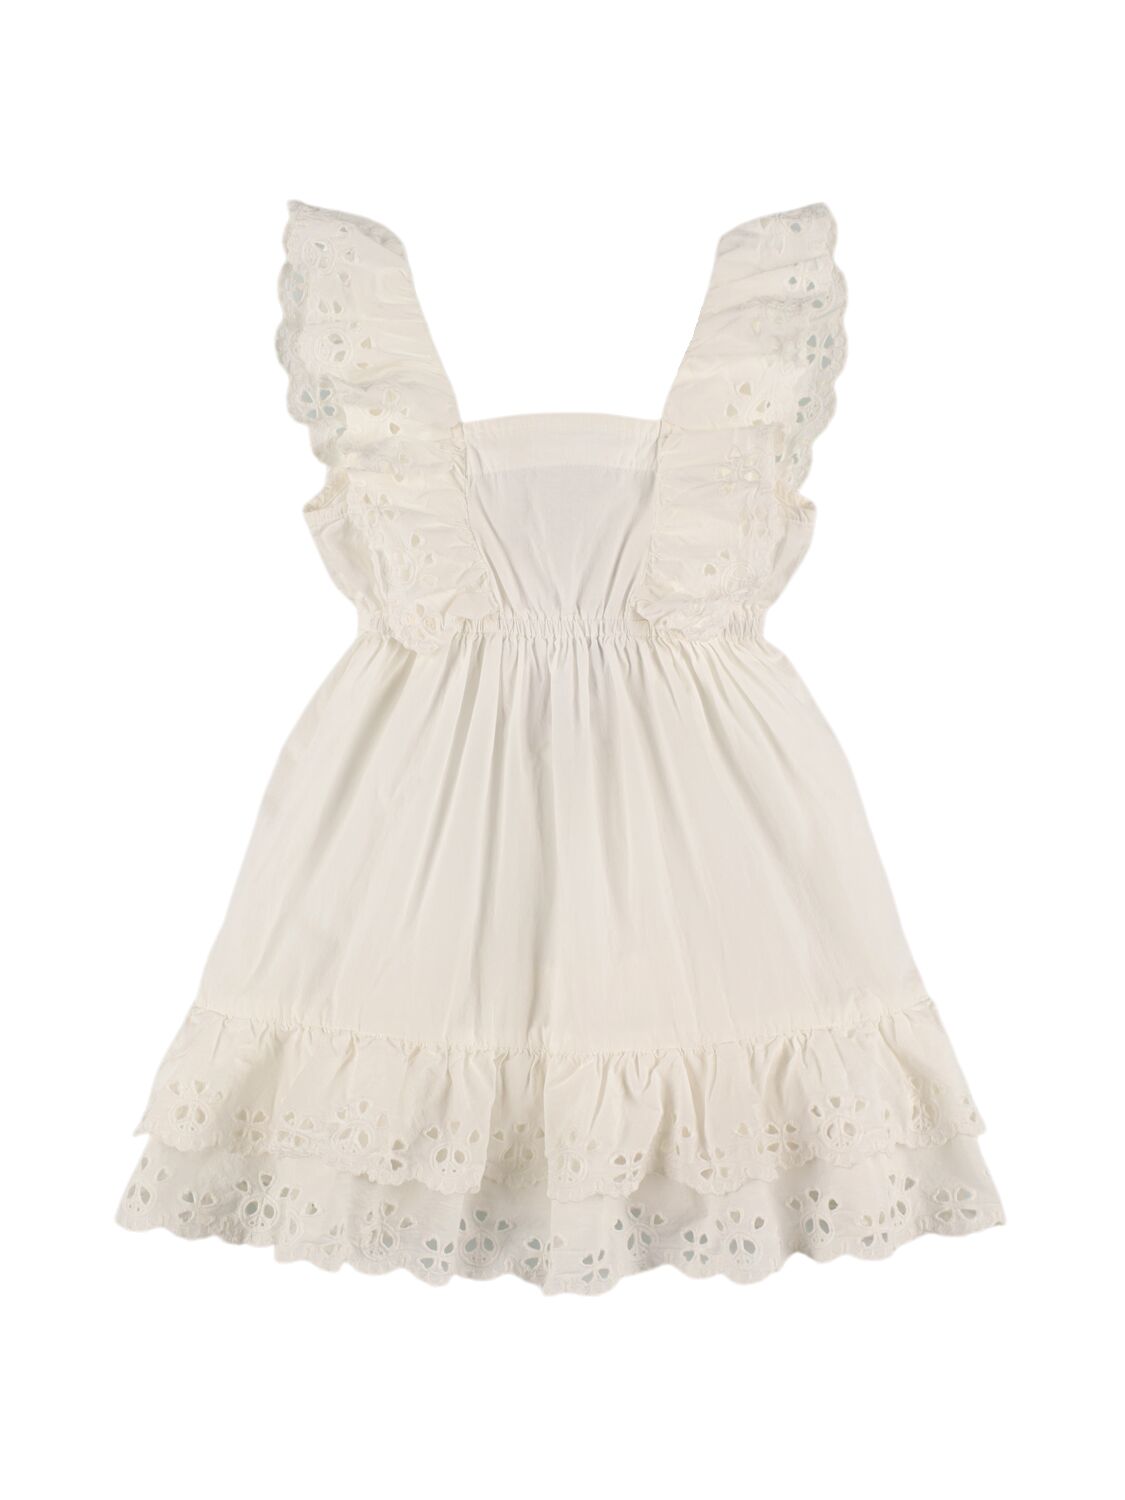 Molo Kids' Cotton Dress In White